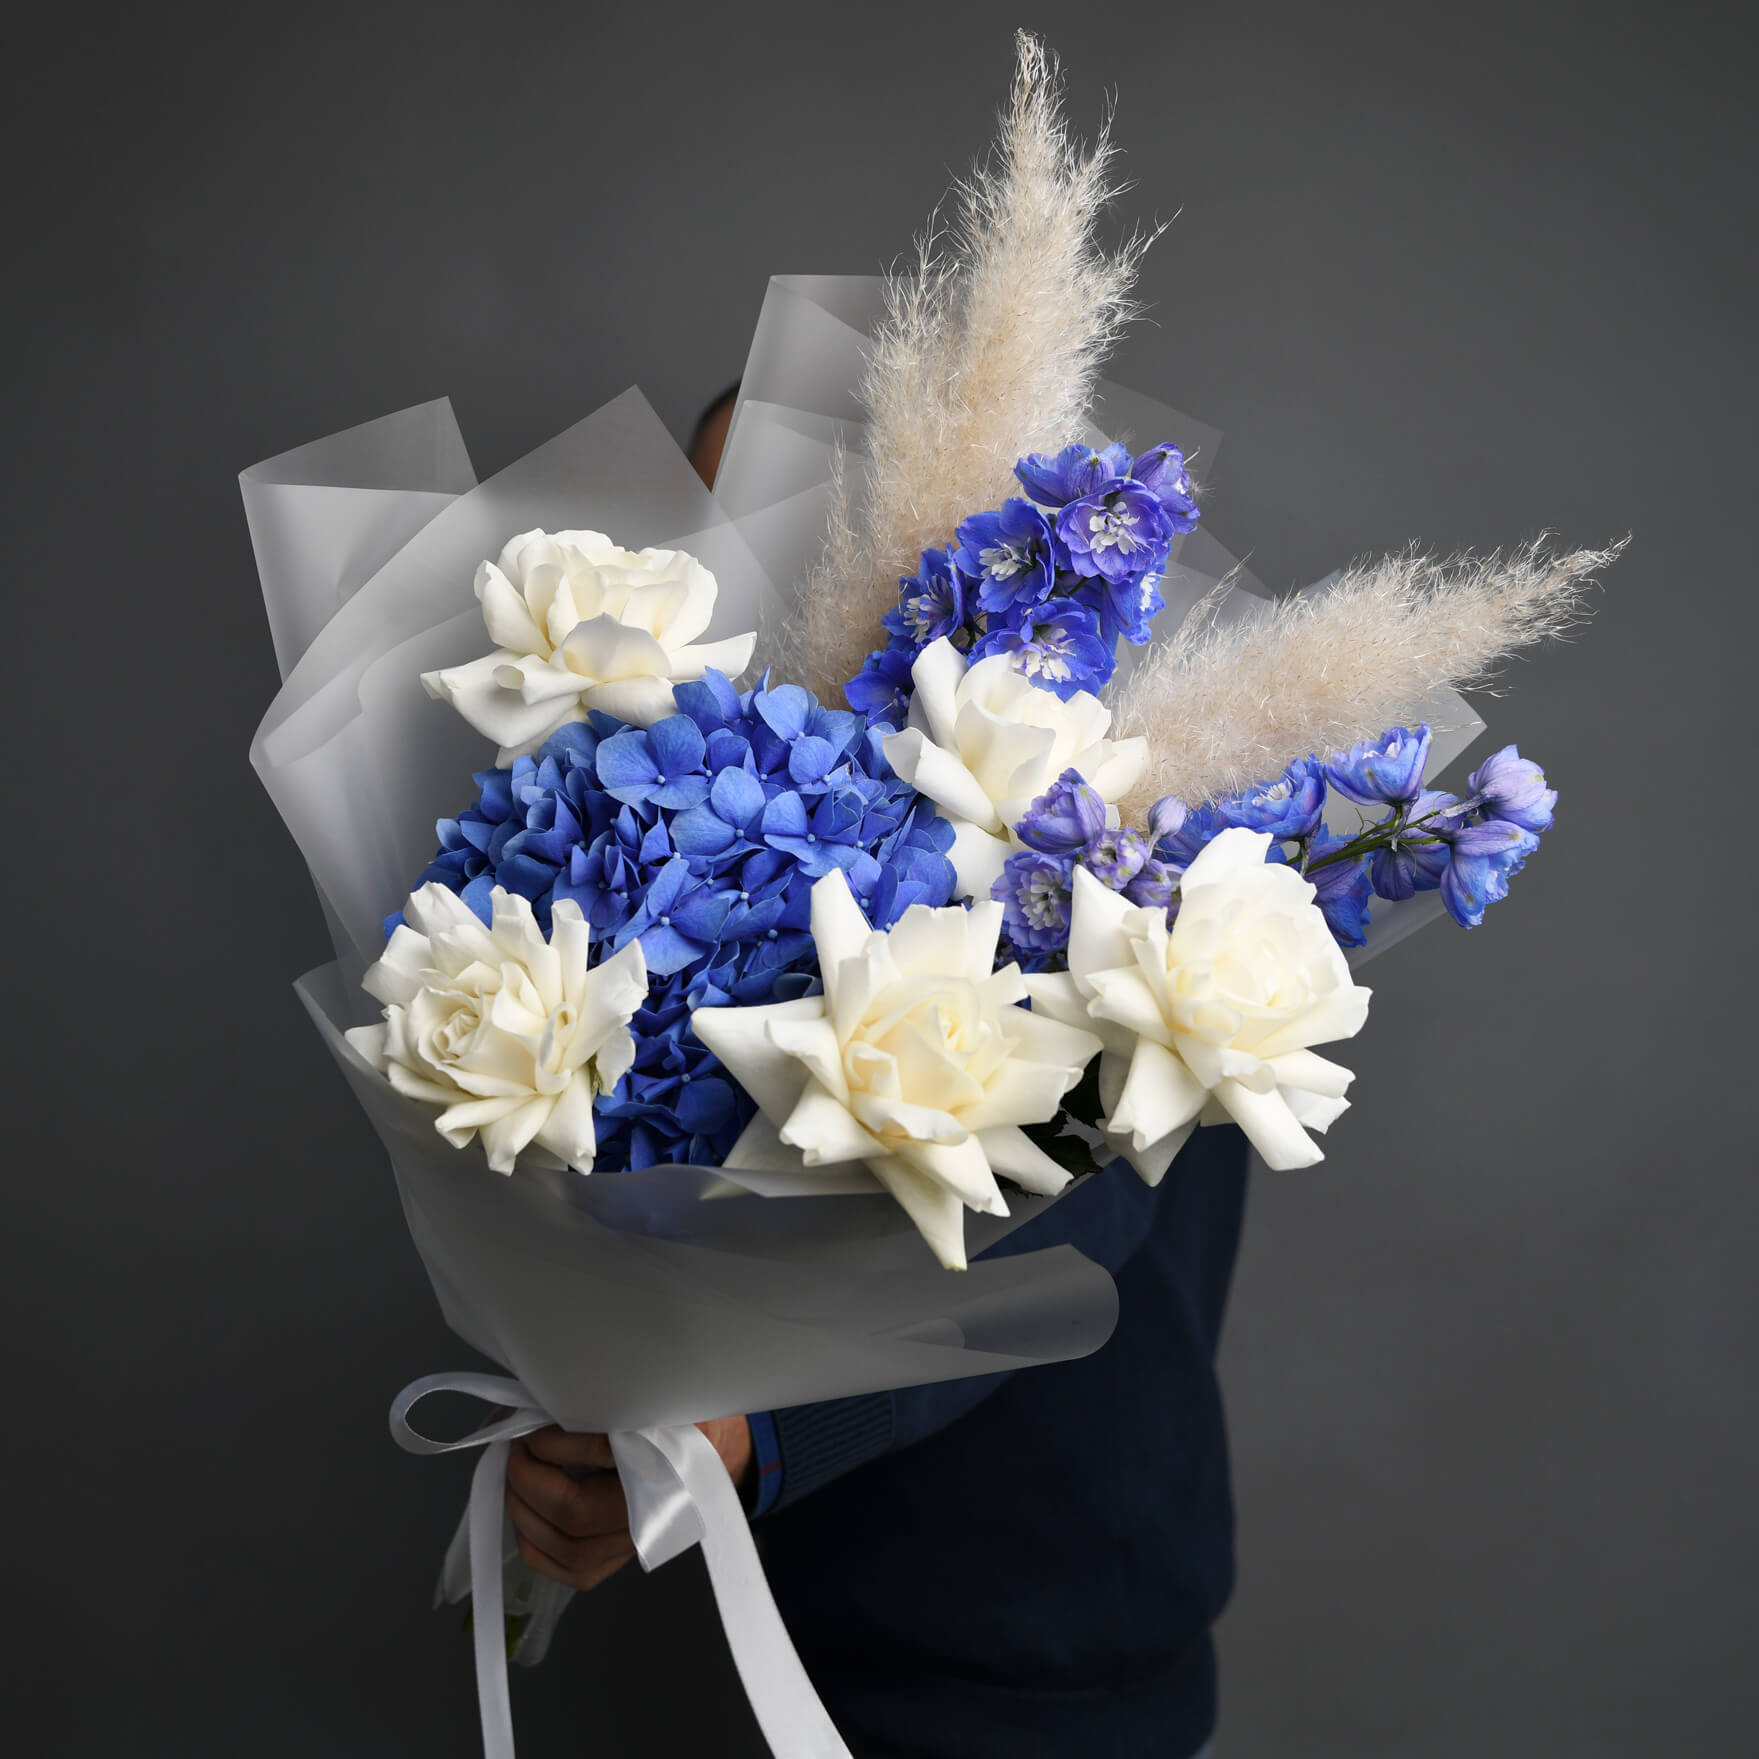 Buchet cu hortensie albastra si delphinium, 2